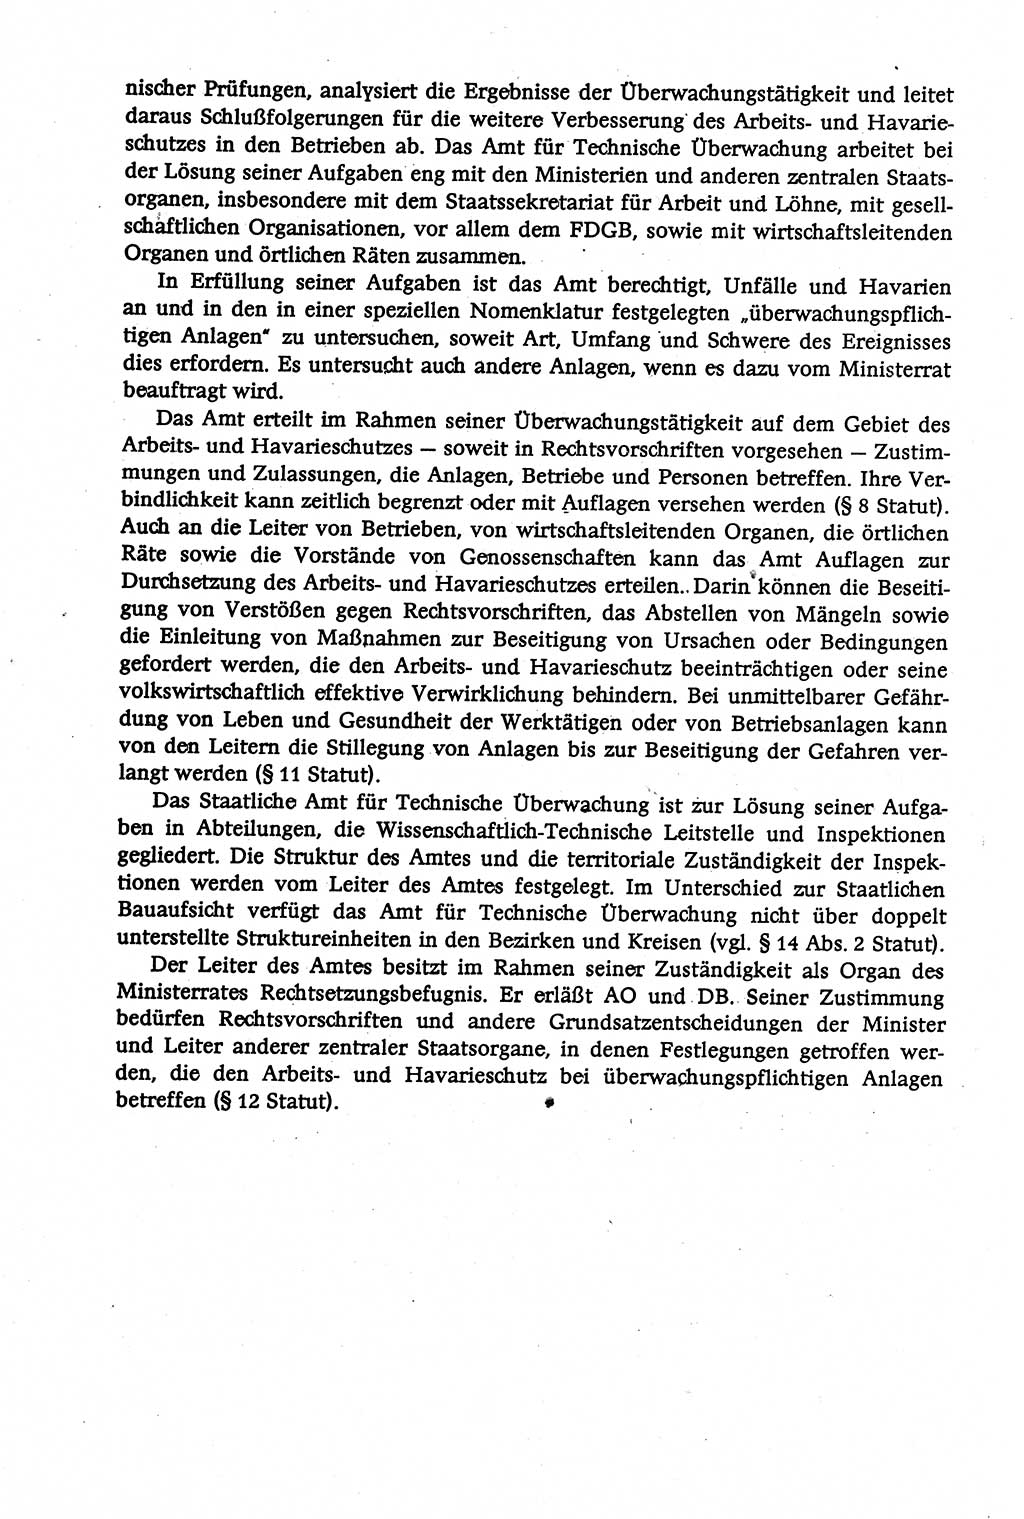 Verwaltungsrecht [Deutsche Demokratische Republik (DDR)], Lehrbuch 1979, Seite 404 (Verw.-R. DDR Lb. 1979, S. 404)